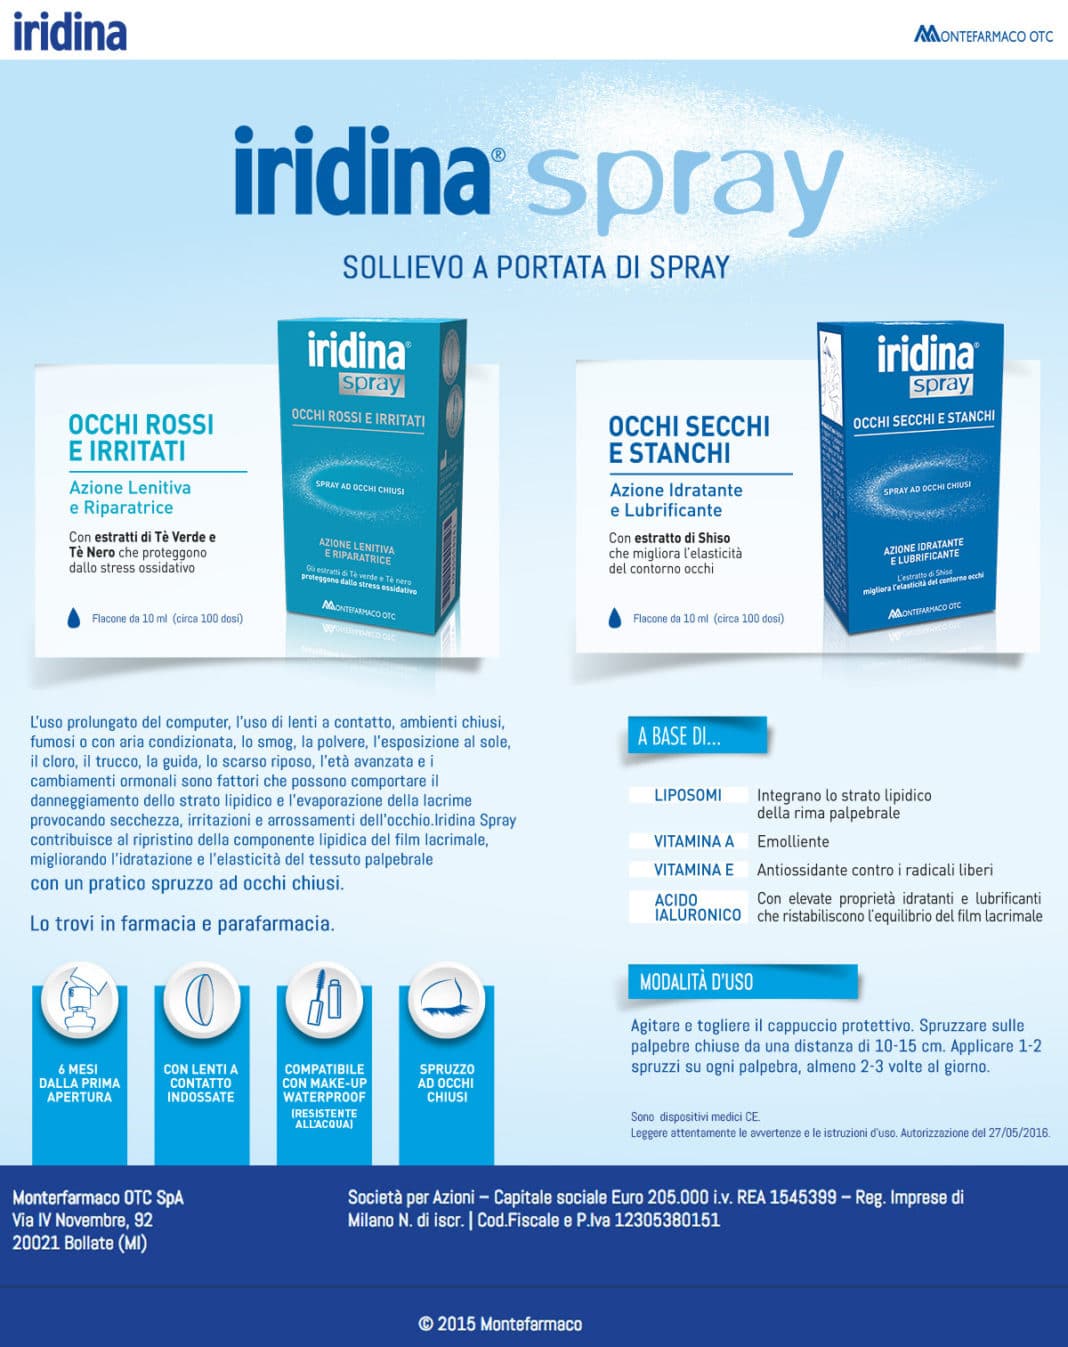 iridina spray